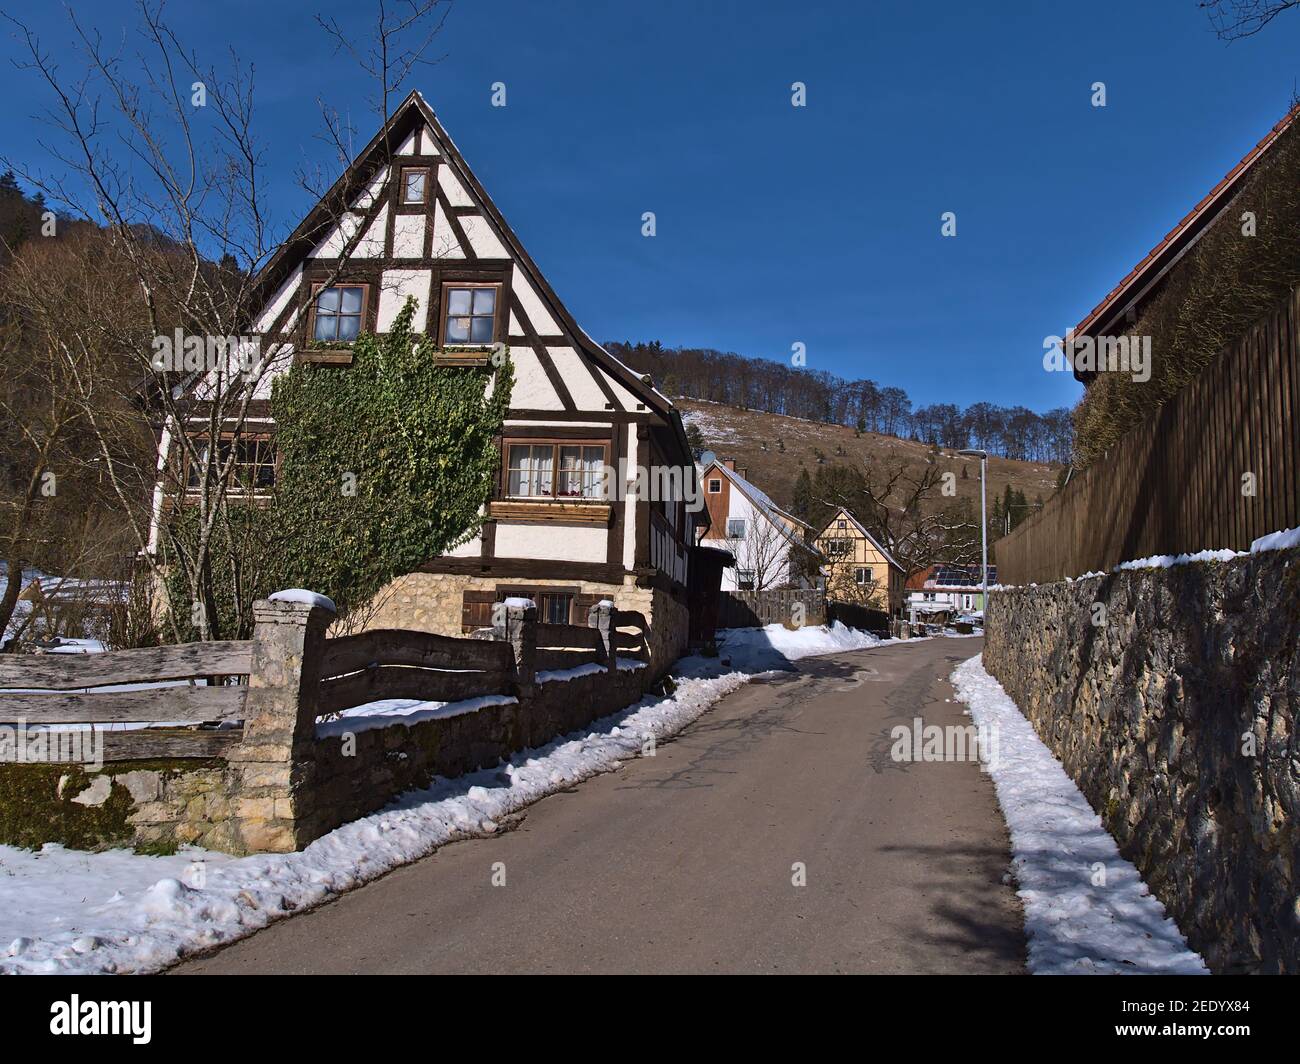 Historisches Fachwerkhaus mit Holzzaun, Steinmauer und asphaltierter Straße im kleinen ländlichen Dorf Gundelfingen, Teil von Münsingen, Deutschland. Stockfoto